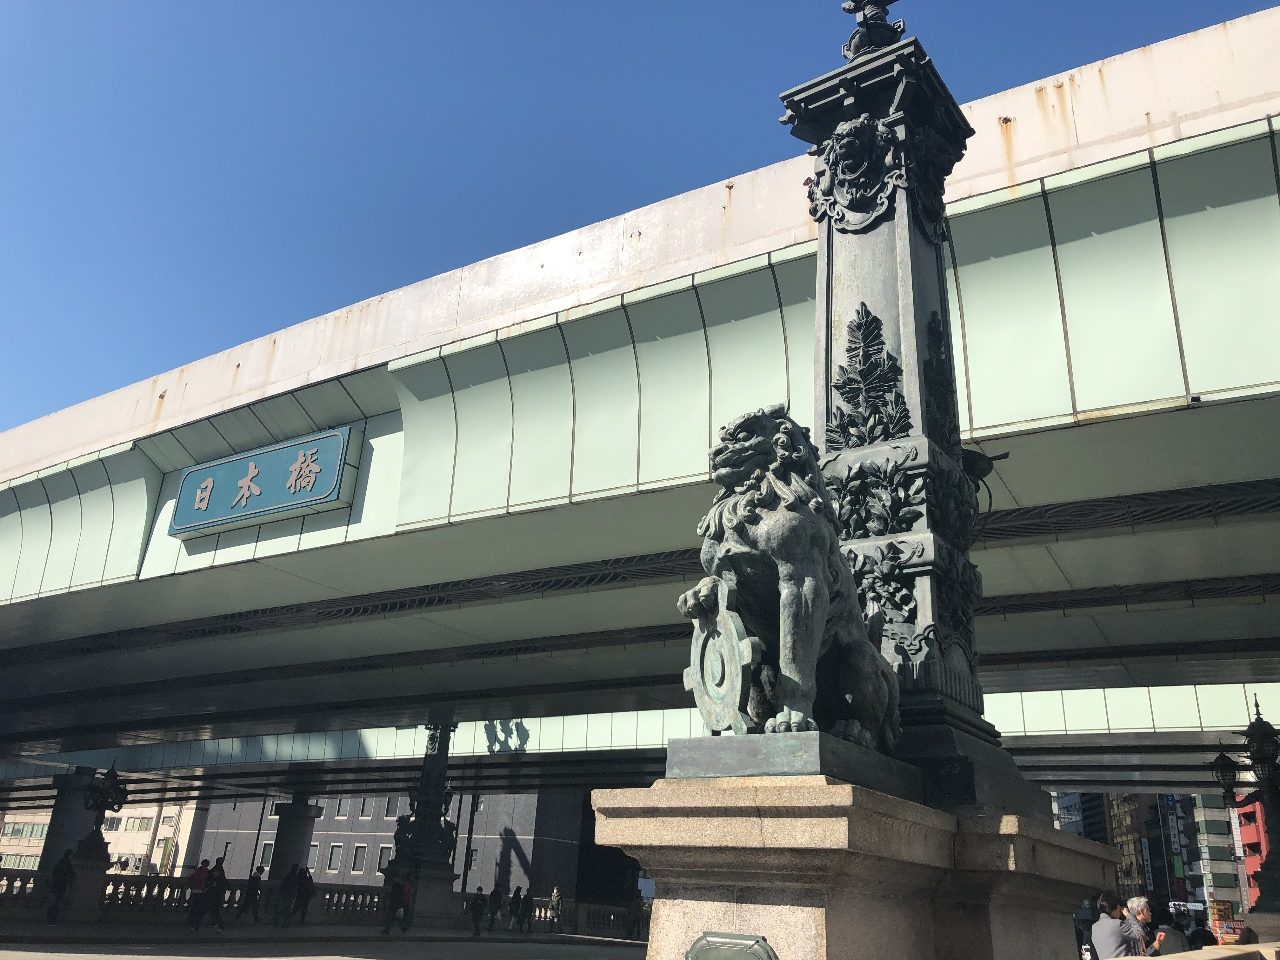 日本橋（にほんばし）は、東京都中央区の日本橋川に架かる橋